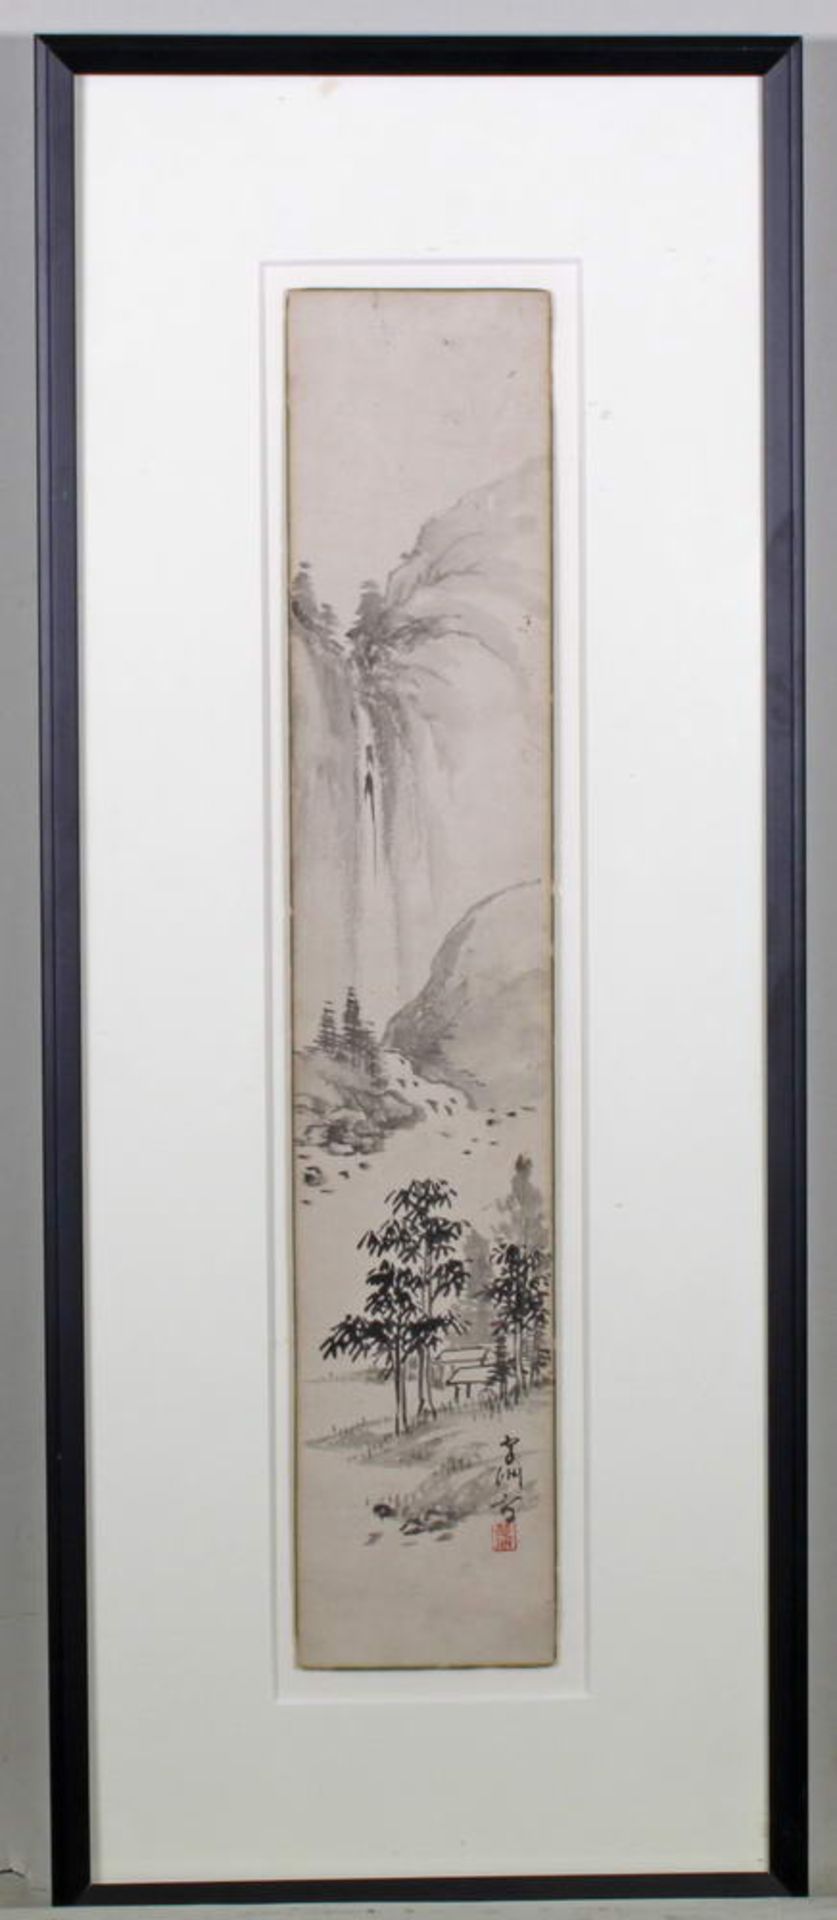 Tuschezeichnung, "Wasserfall", Japan, 20. Jh., 35.5 x 7 cm, unter Glas gerahmt- - -25.00 % buyer's - Bild 3 aus 6